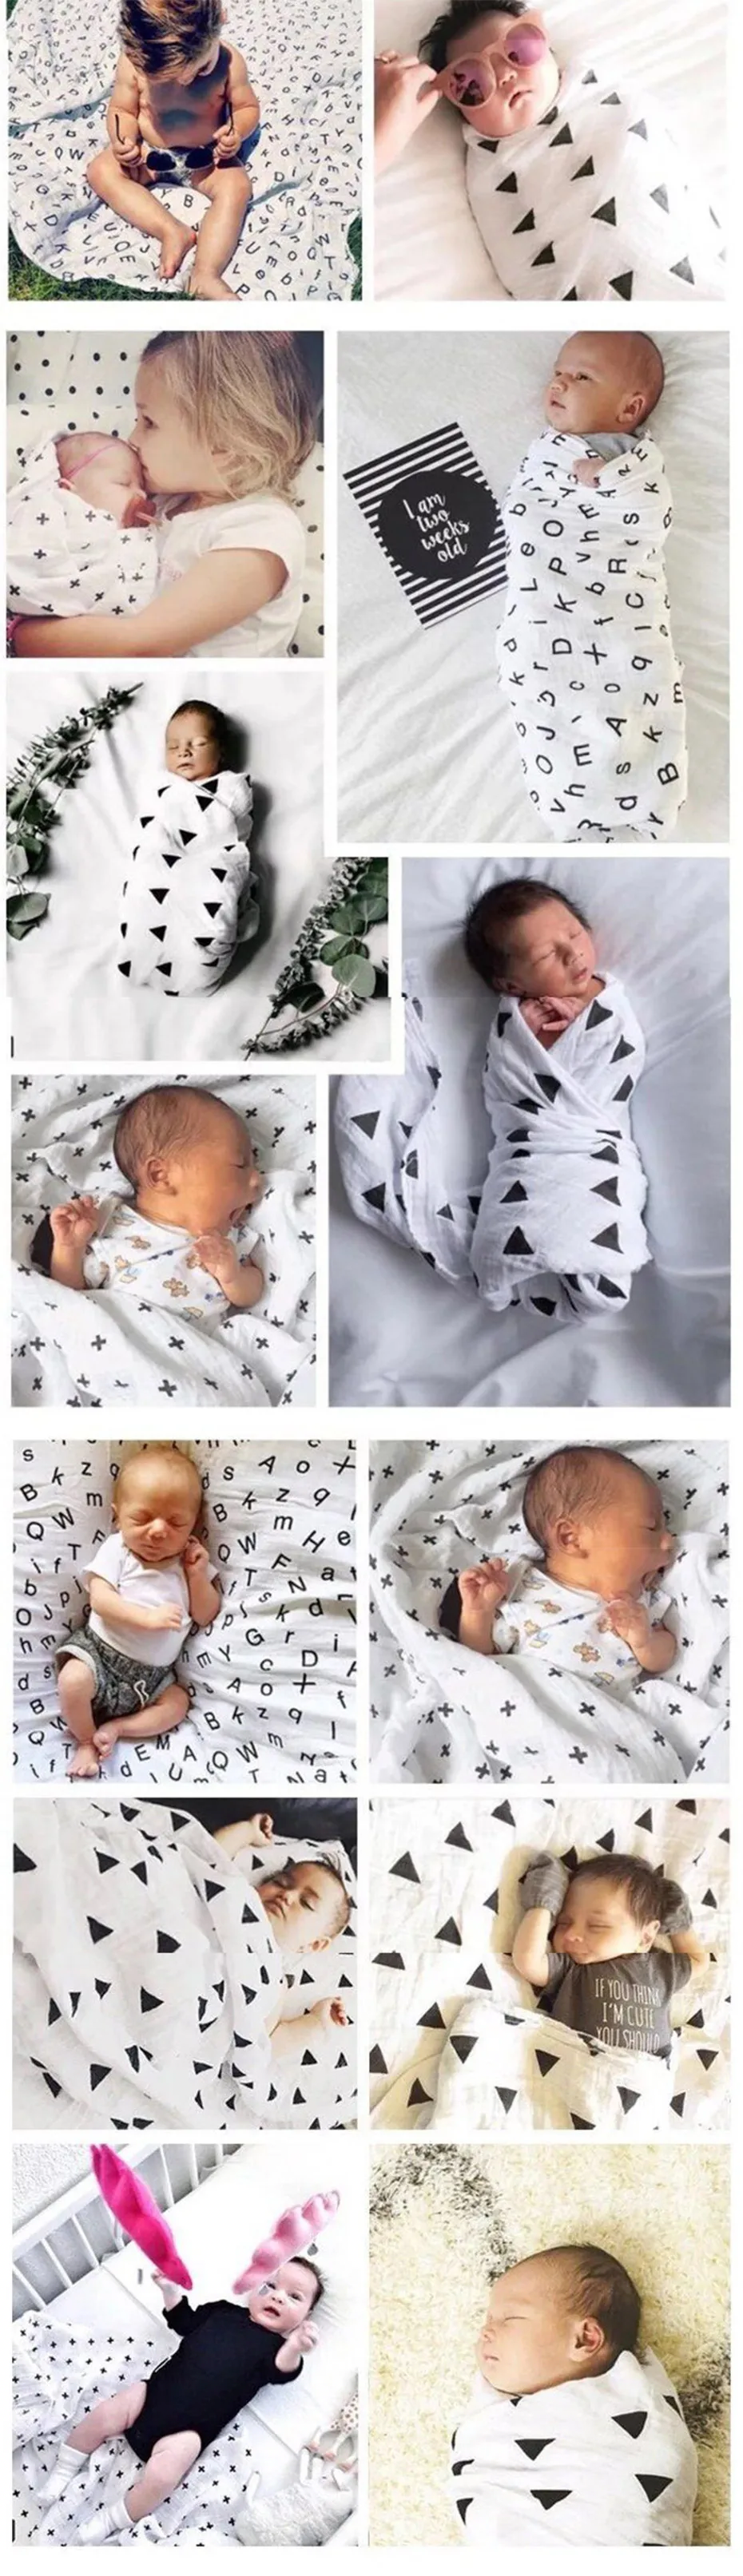 Муслин Хлопок Детские пеленает новорожденных детские одеяла Nap получения коляска Обёрточная бумага черные и белые Марля банное Полотенца